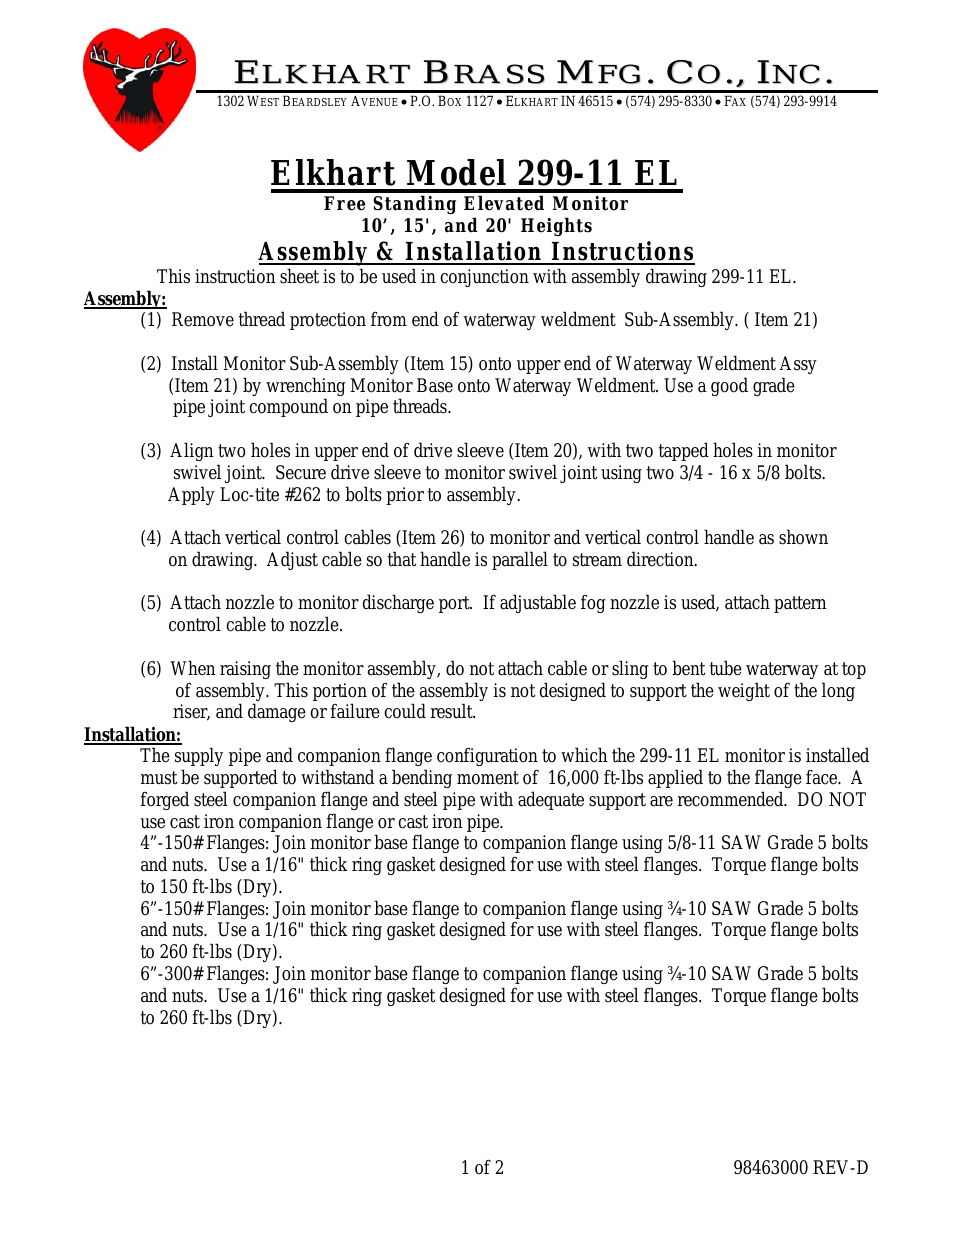 ELKHART 299-11 EL (10,15,20FT)